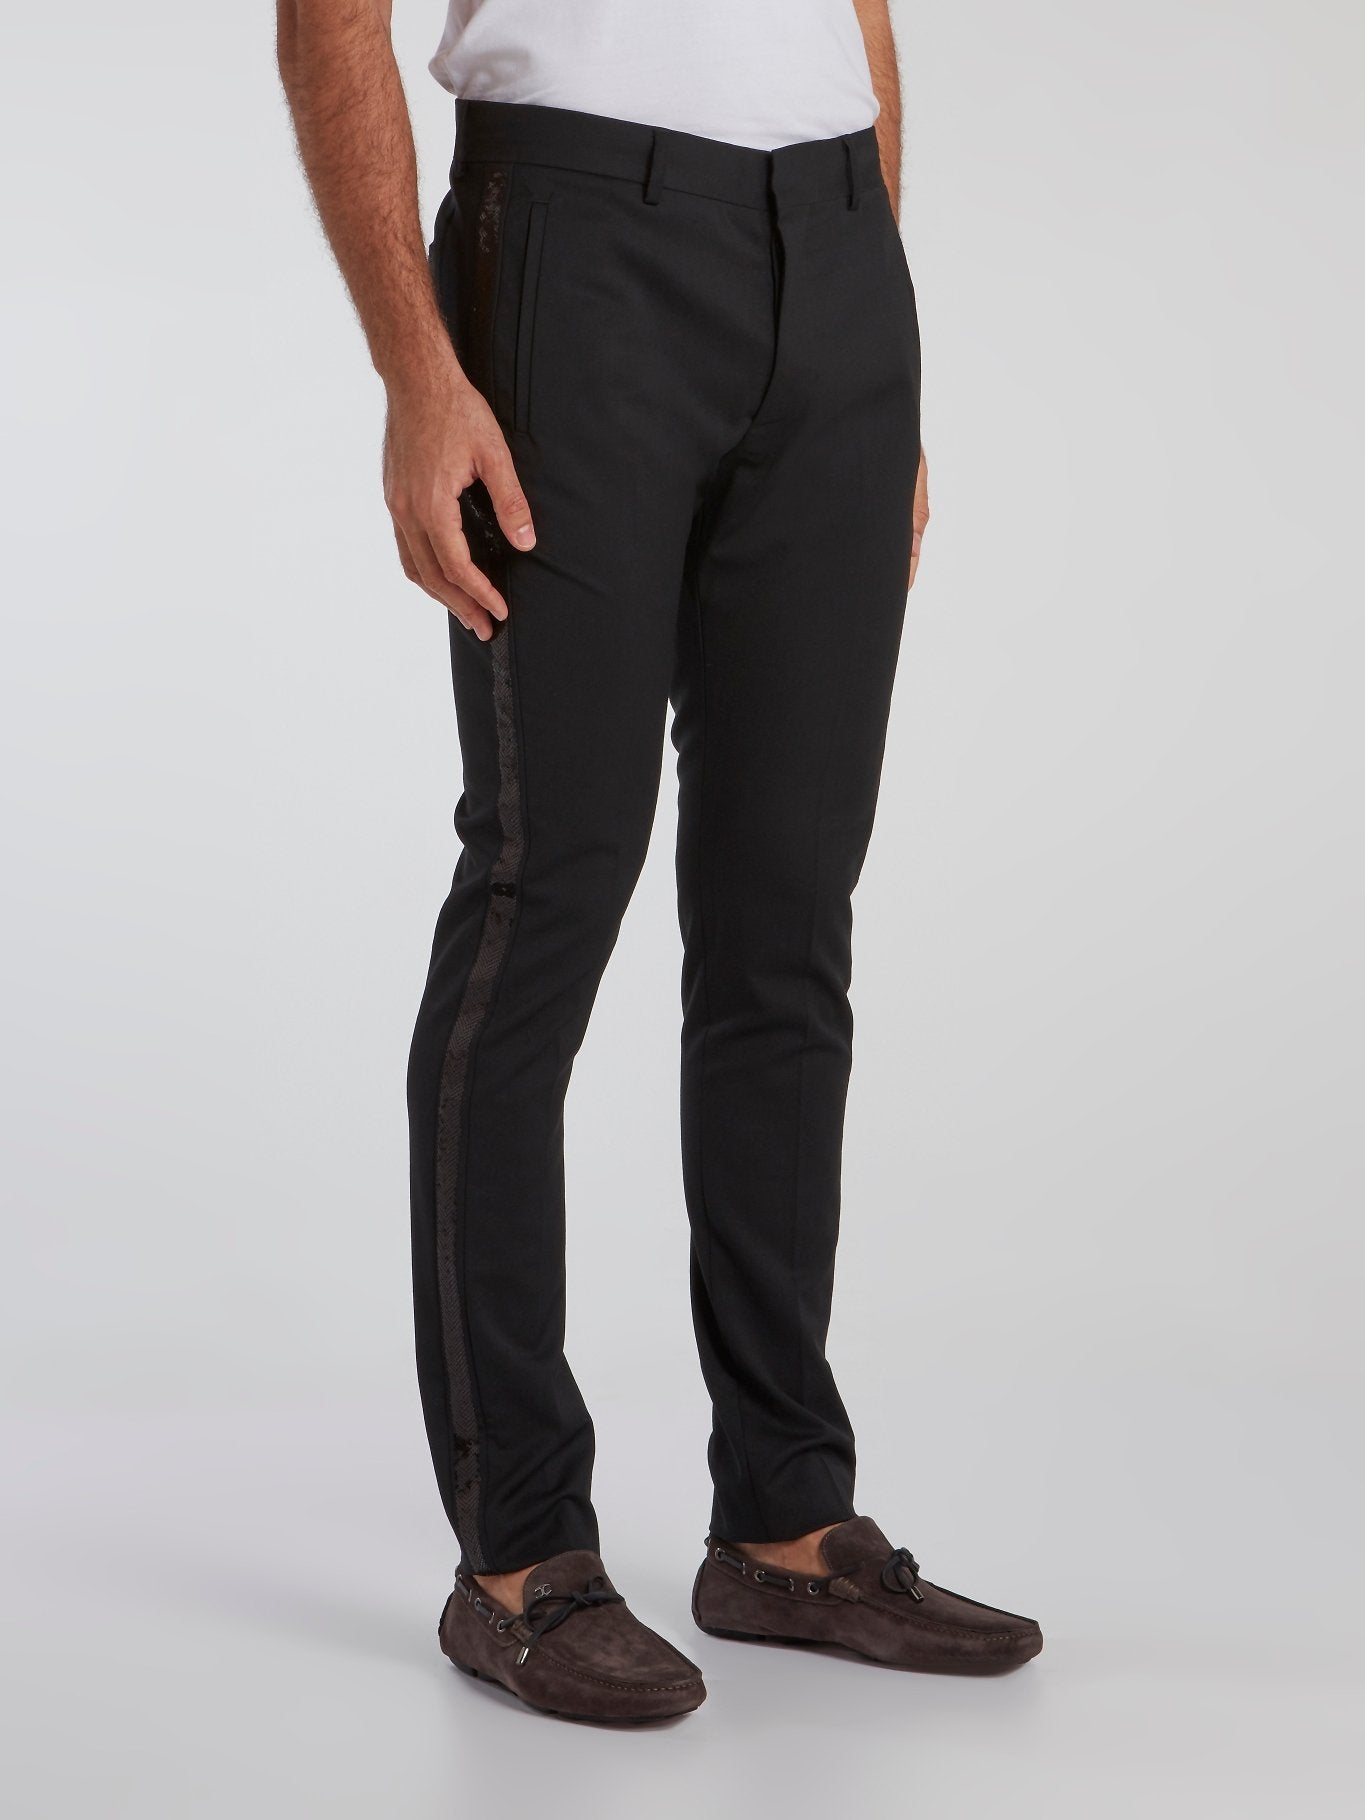 Black Embellished Suit Pants